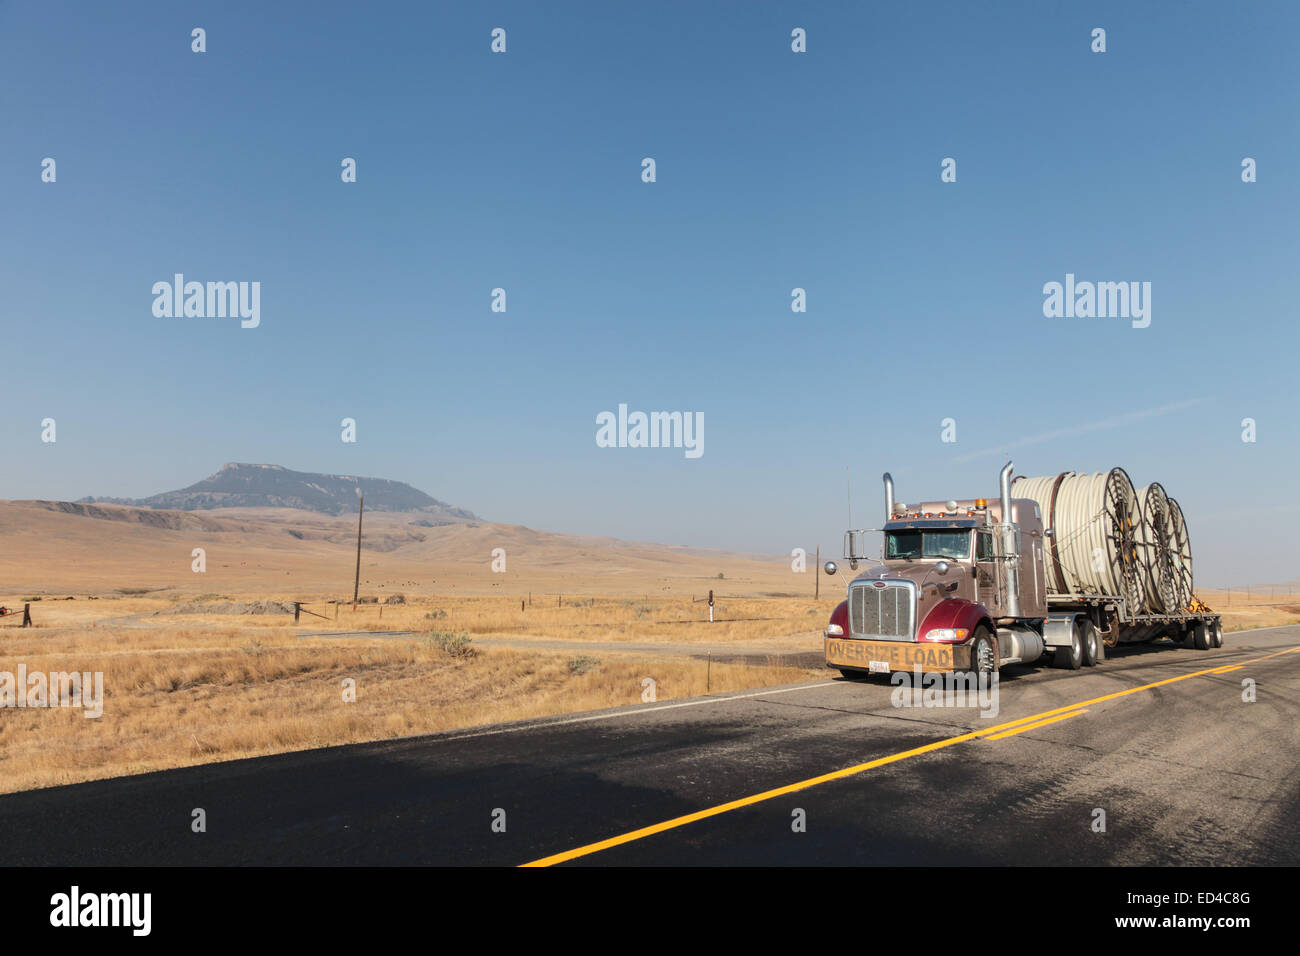 Un Américain Peterbilt 379 camion semi bobines de tuyau en plastique HDPE sur une remorque à plateau pour l'industrie pétrolière et dans les sites de fracturation USA Banque D'Images